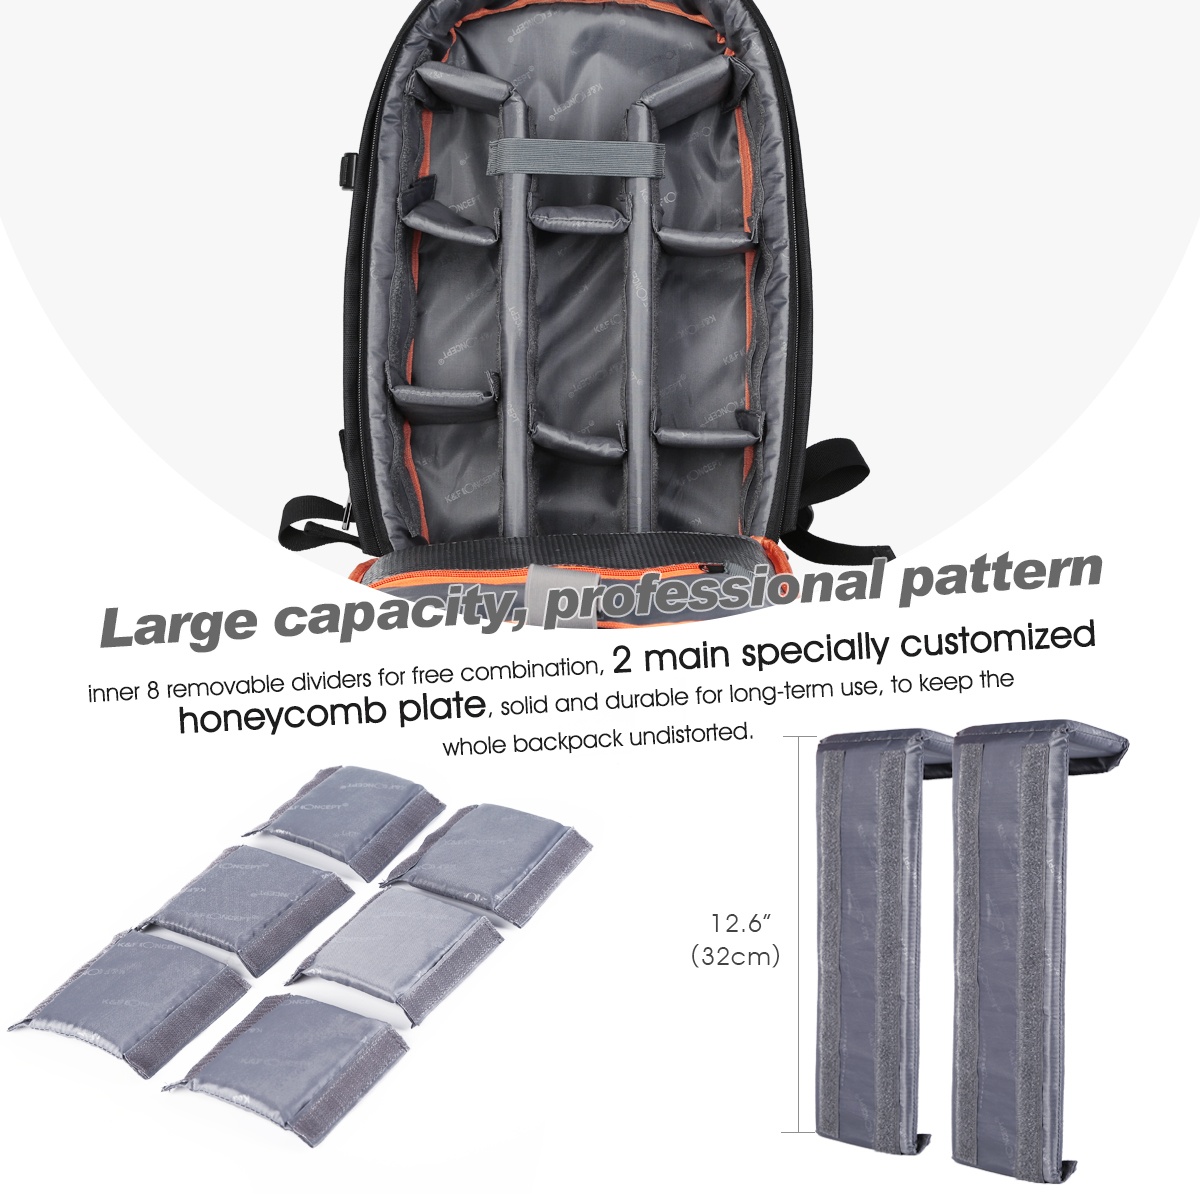 K&F Concept 13.037 Backpack Rucksack Bag Waterproof (L)